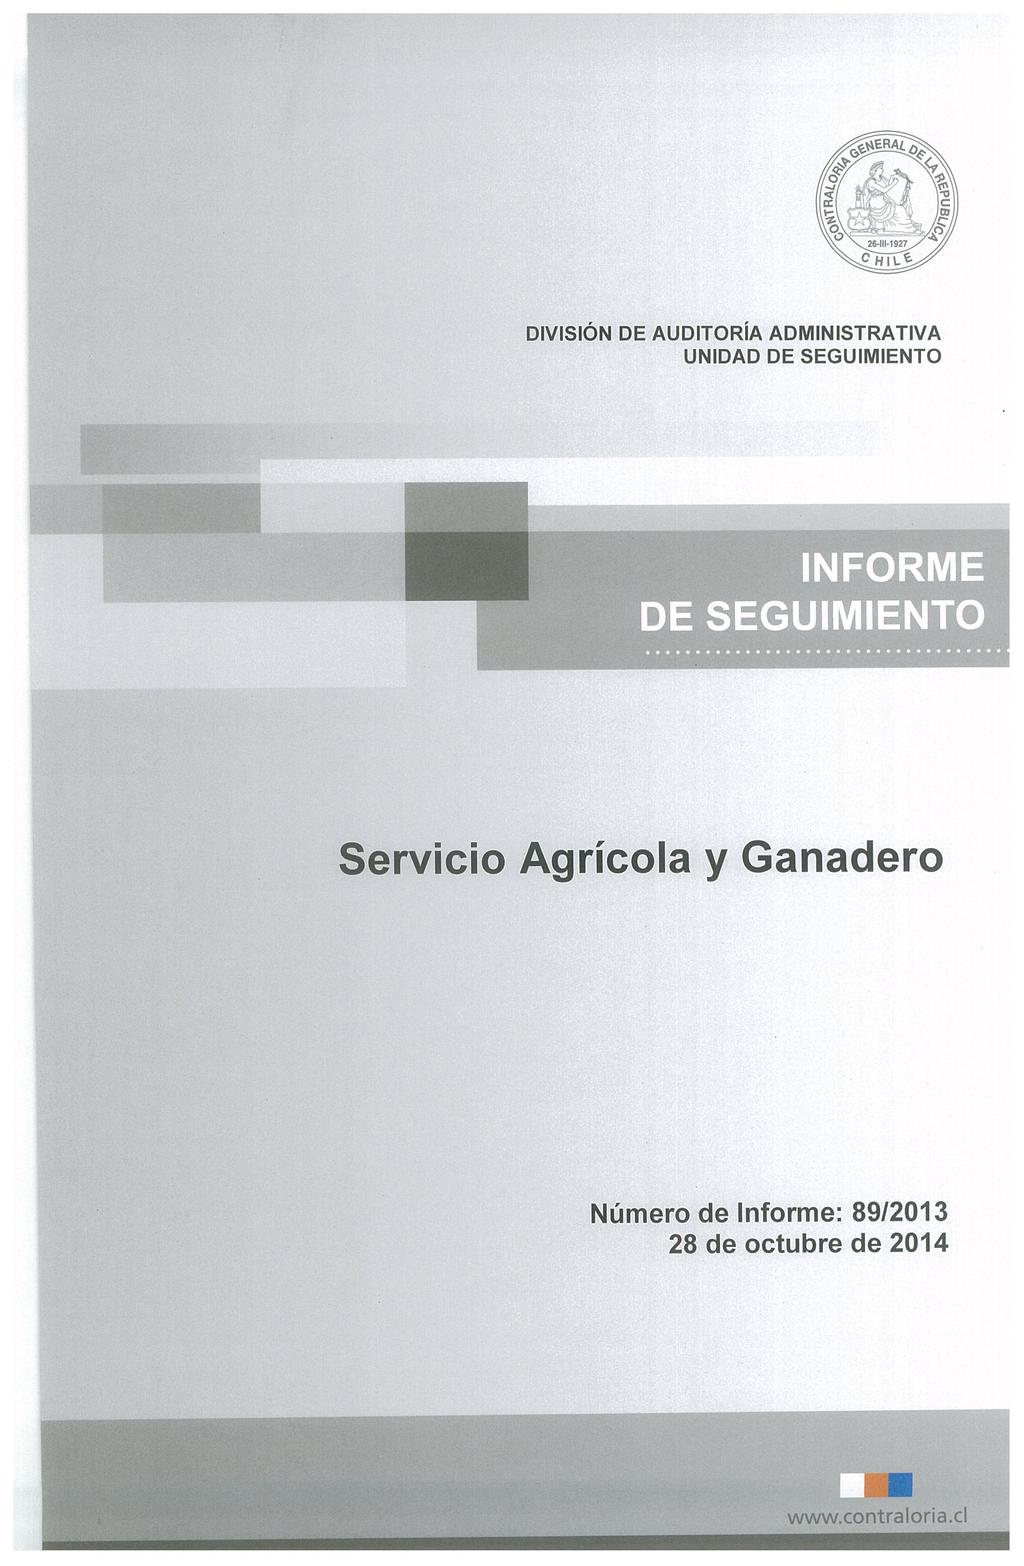 DIVISIÓN DE AUDITORíA ADMINISTRATIVA INFORME DE SEGUIMIENTO Servicio Agrícola